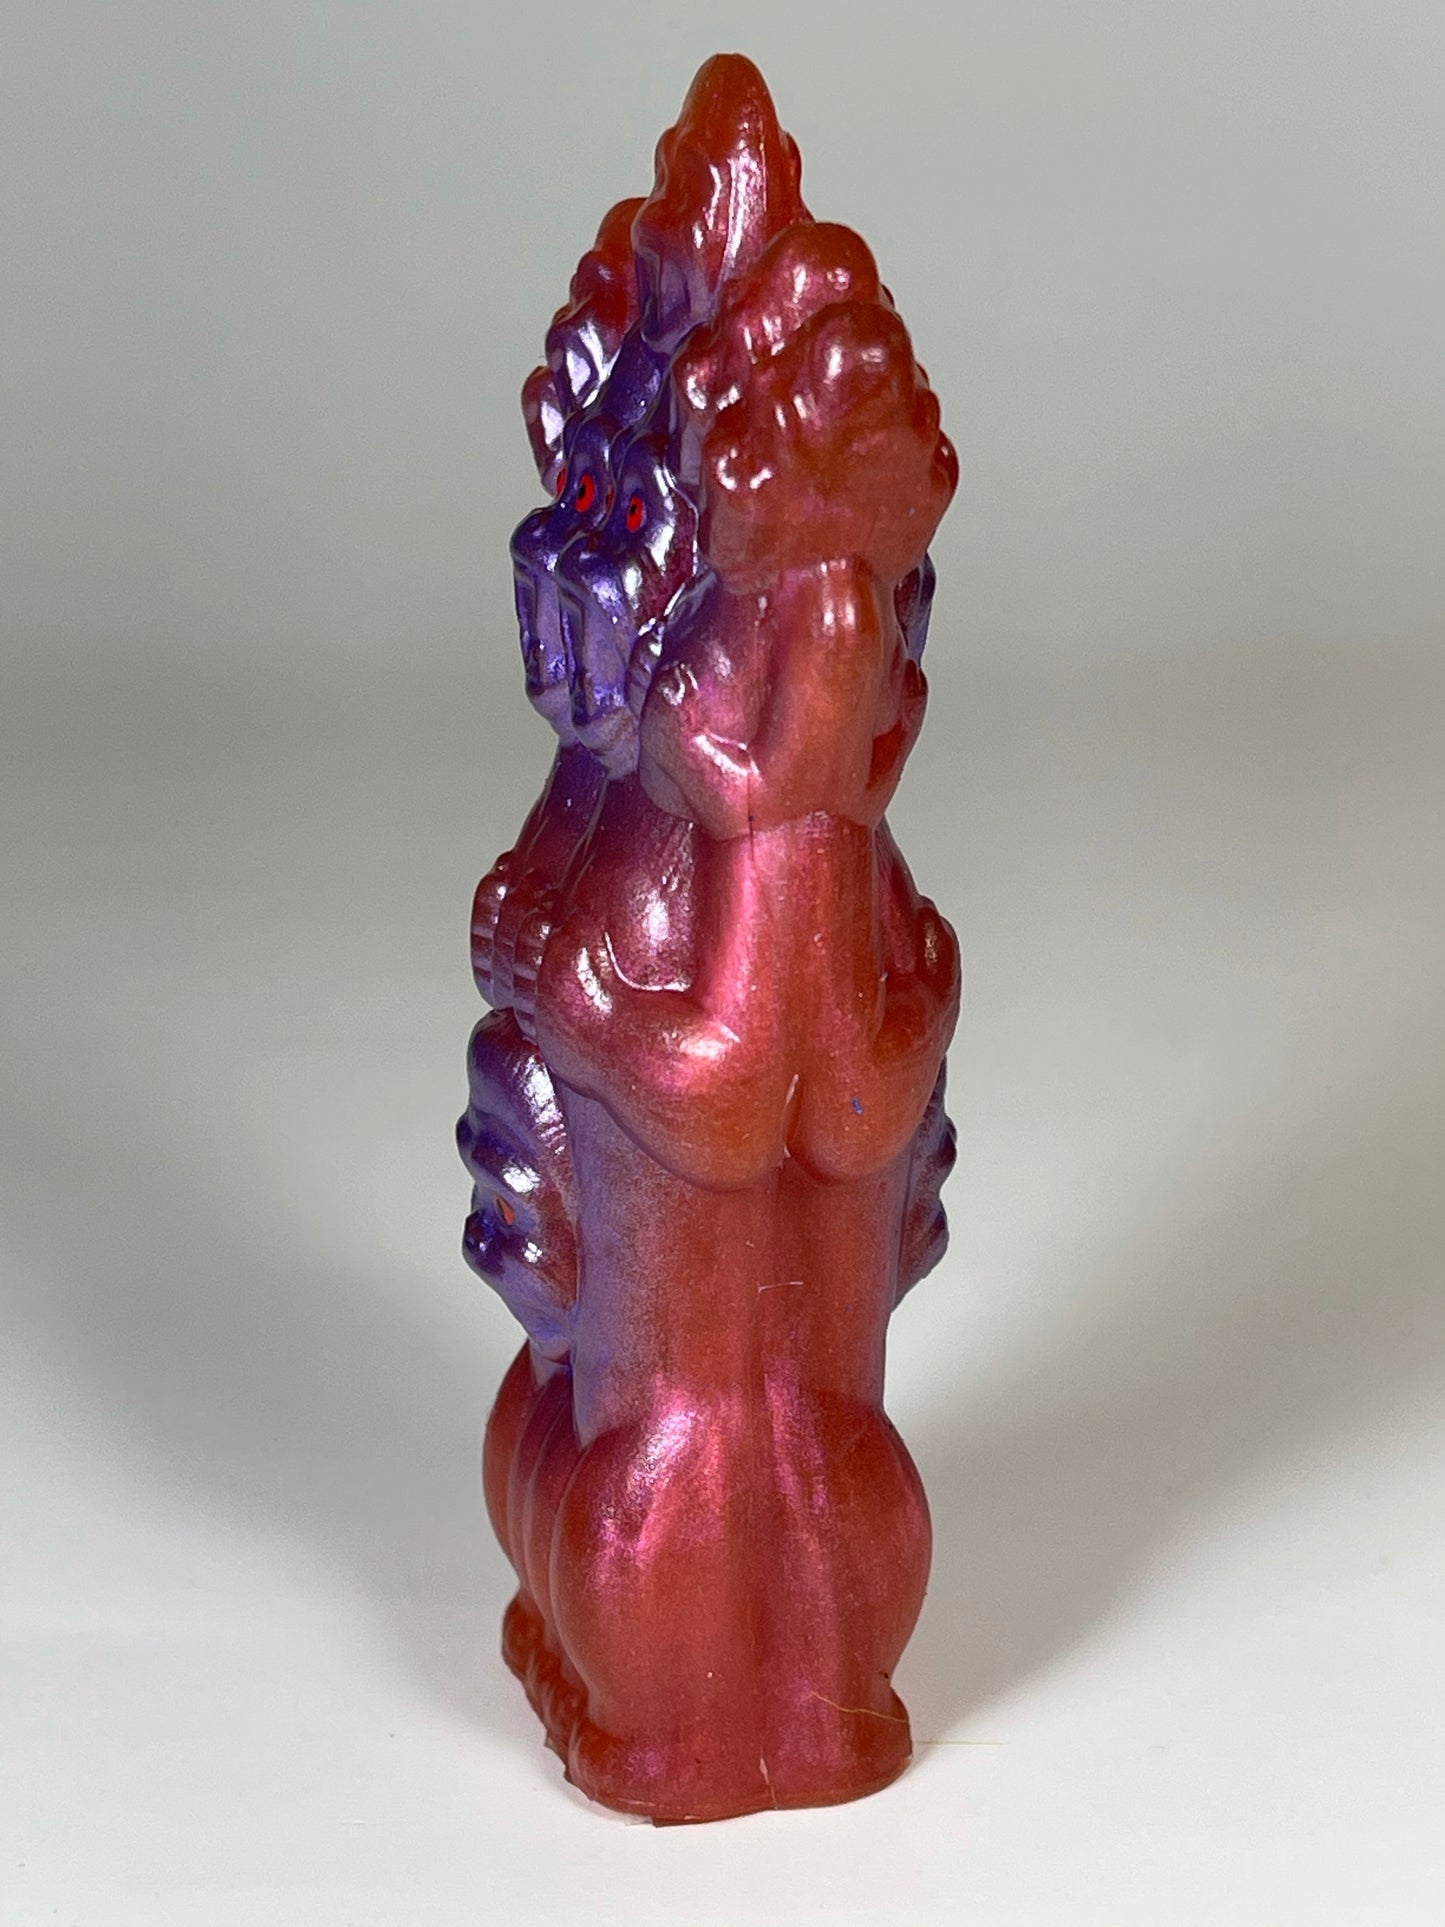 King Lord Ape: Pink/Purple Jiggler